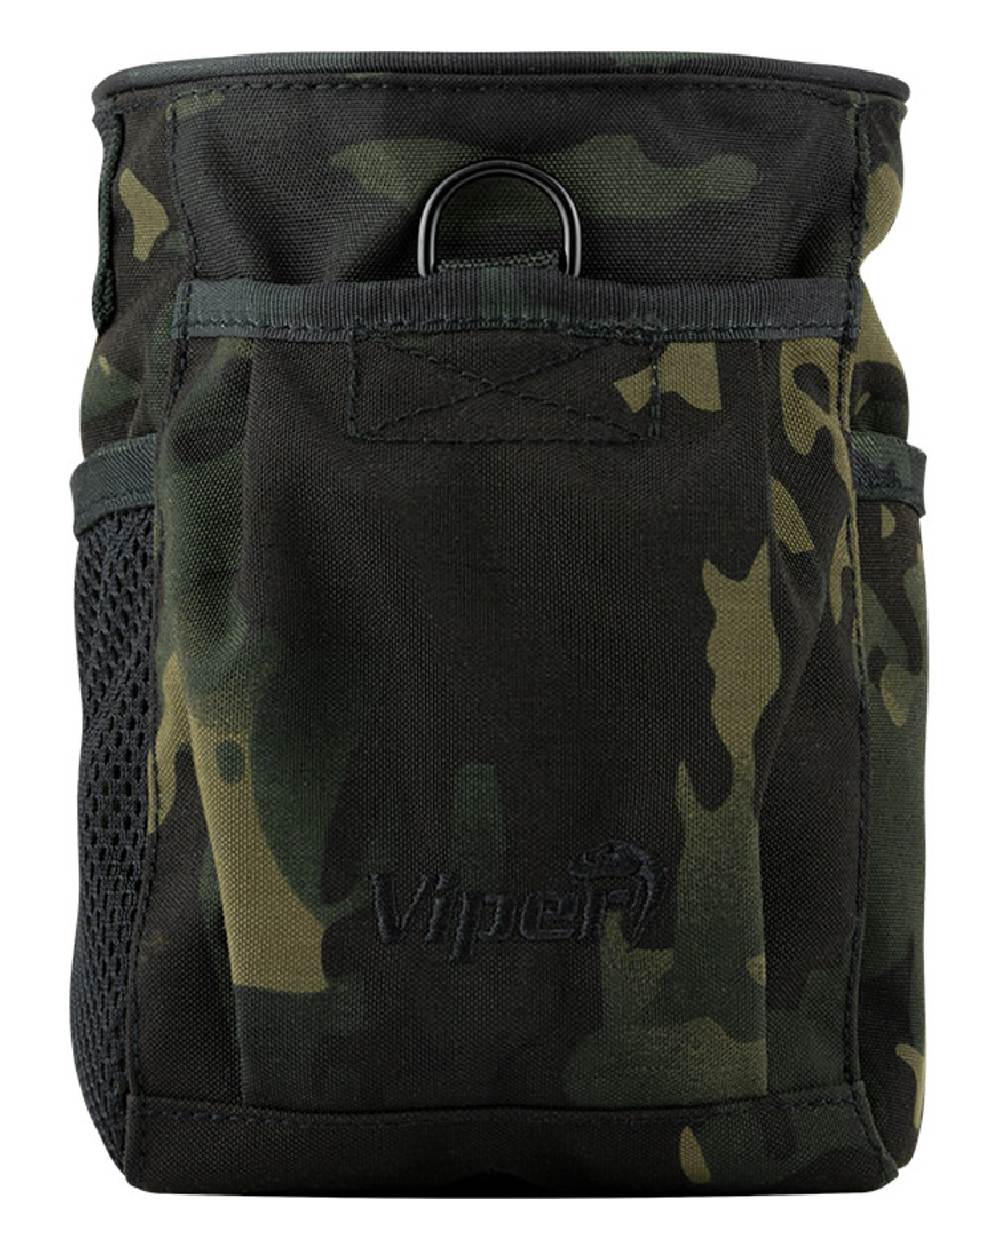 Viper Elite Dump Bag in VCAM Black 